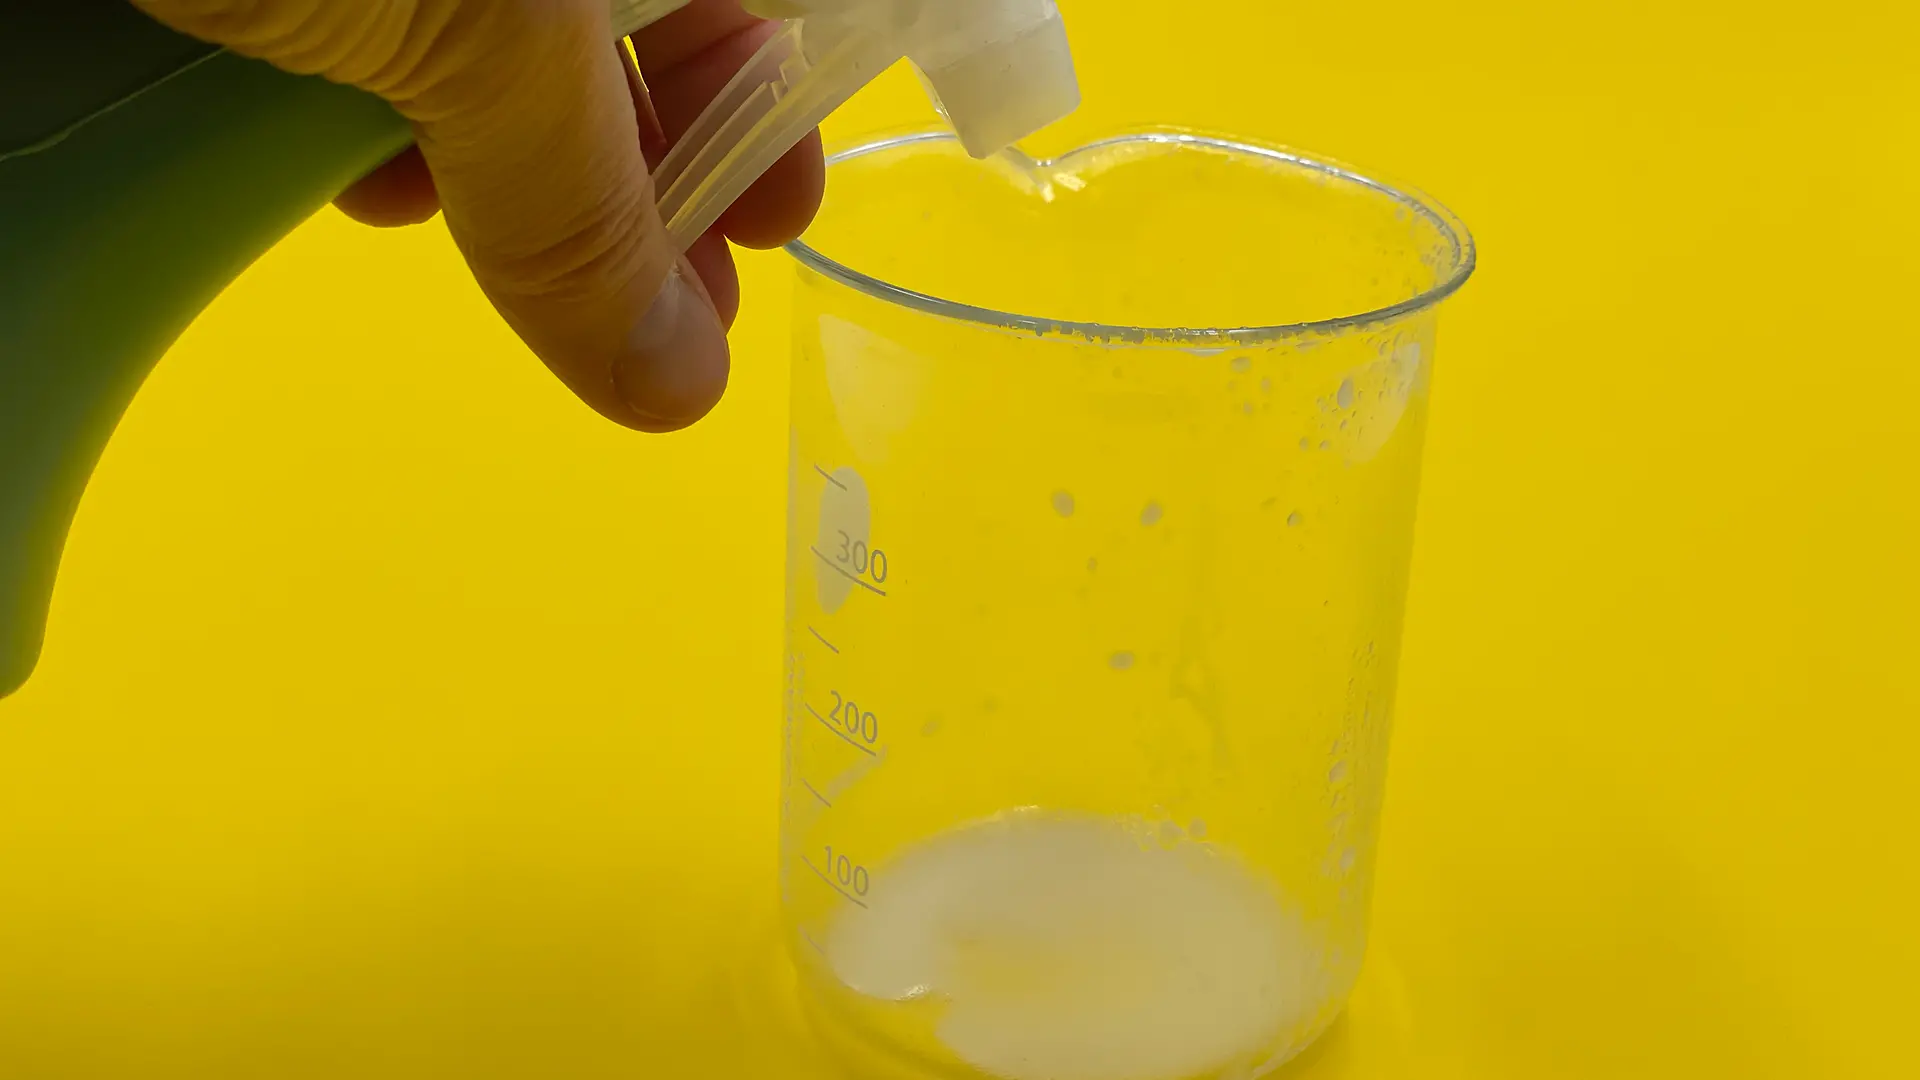 Sprühflasche, deren Inhalt in Becherglas mit weißer, schaumiger Flüssigkeit gesprüht wird.